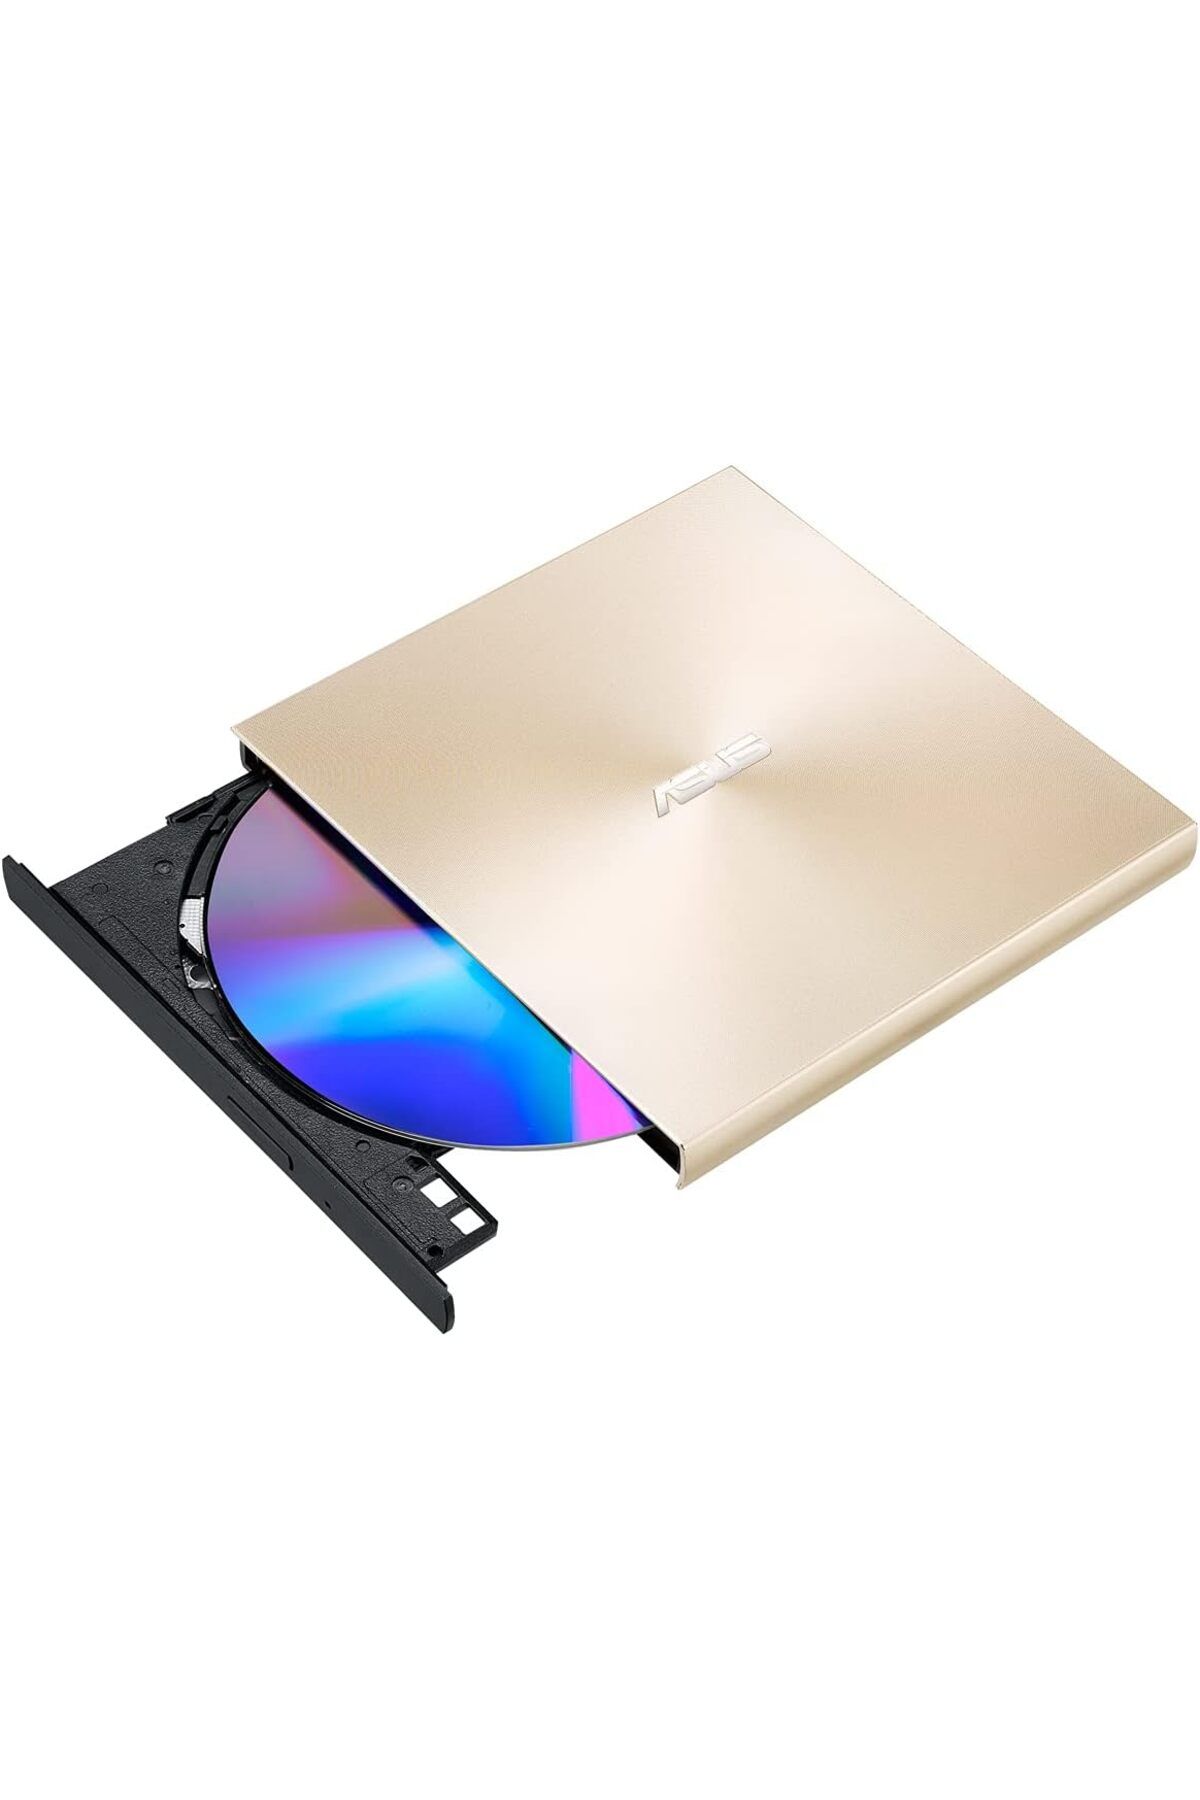 Store ZenDrive-U8M SDRW-08U8M-U Harici Ultra İnce DVD Yazıcı, M-Disc, USB Type-C, Altın